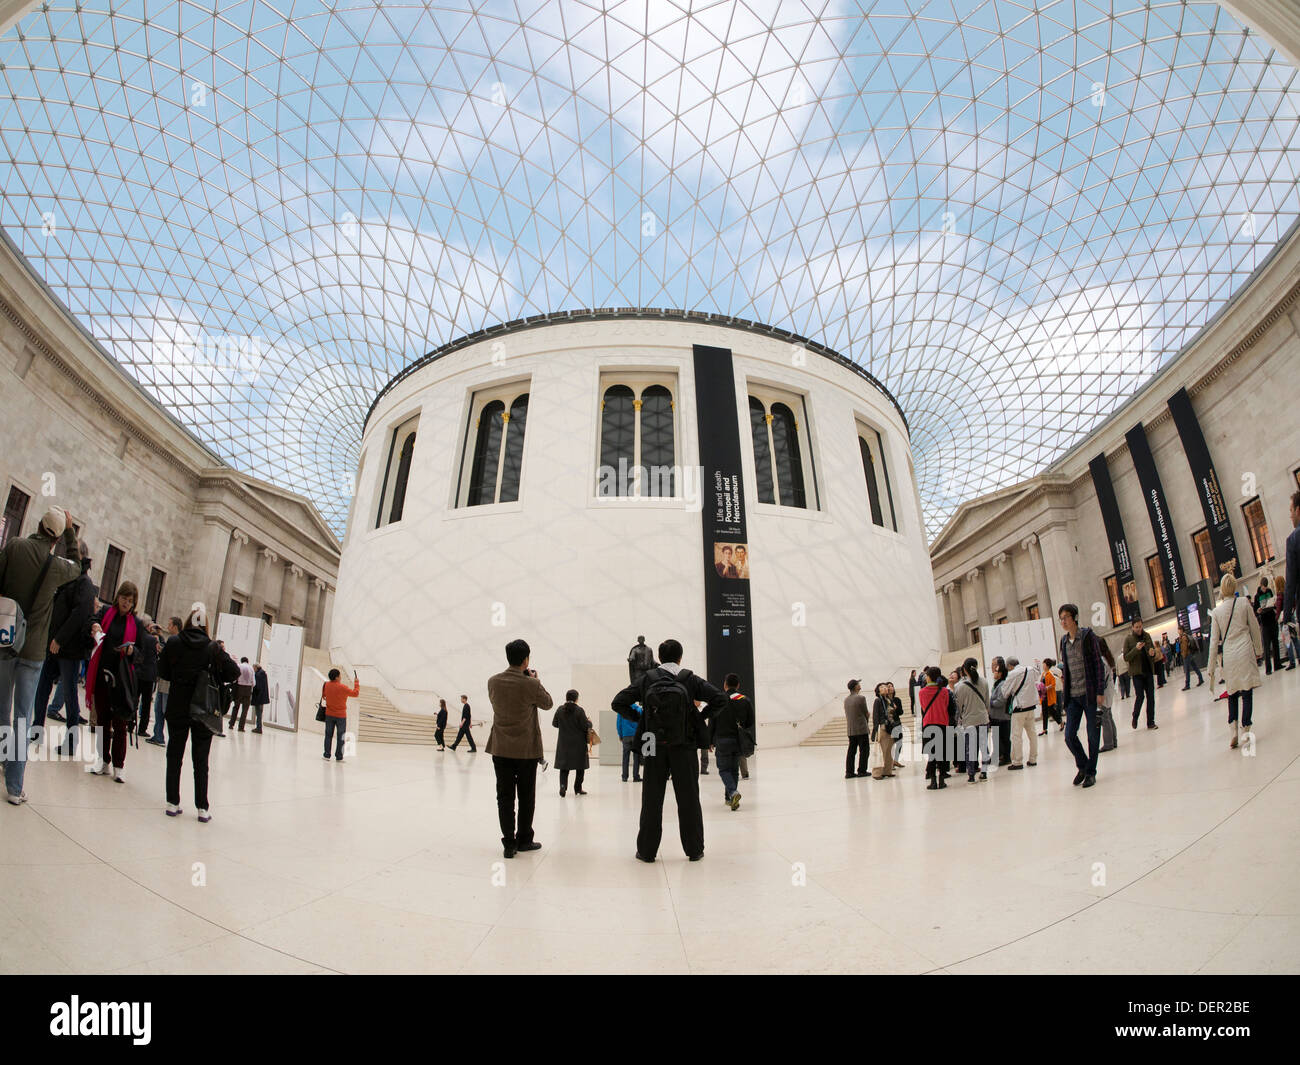 The British Museum - Queen Elizabeth II Great Court 3 Stock Photo